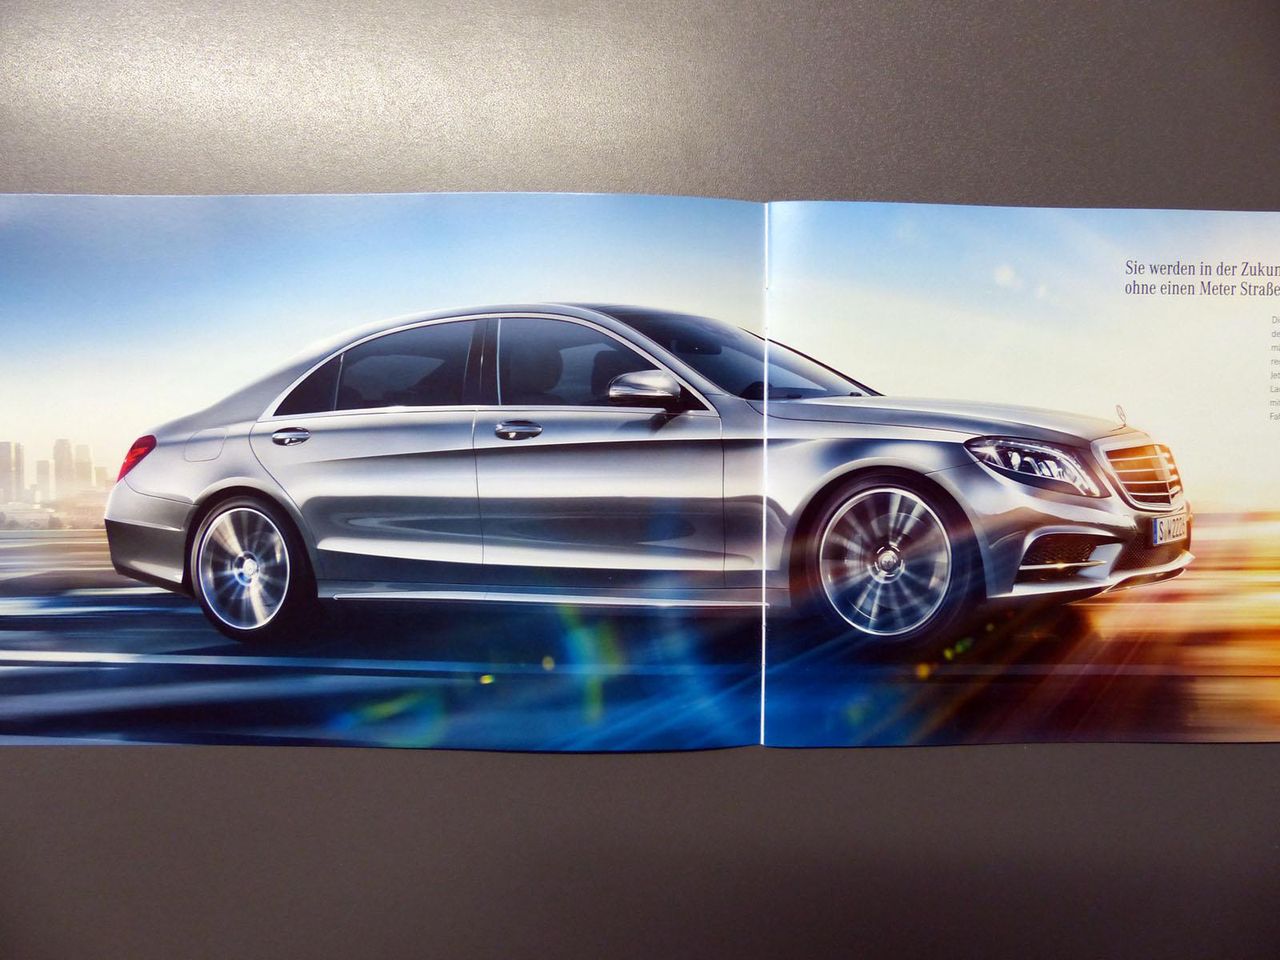 2014 Mercedes-Benz klasy S (zdjęcia broszury)